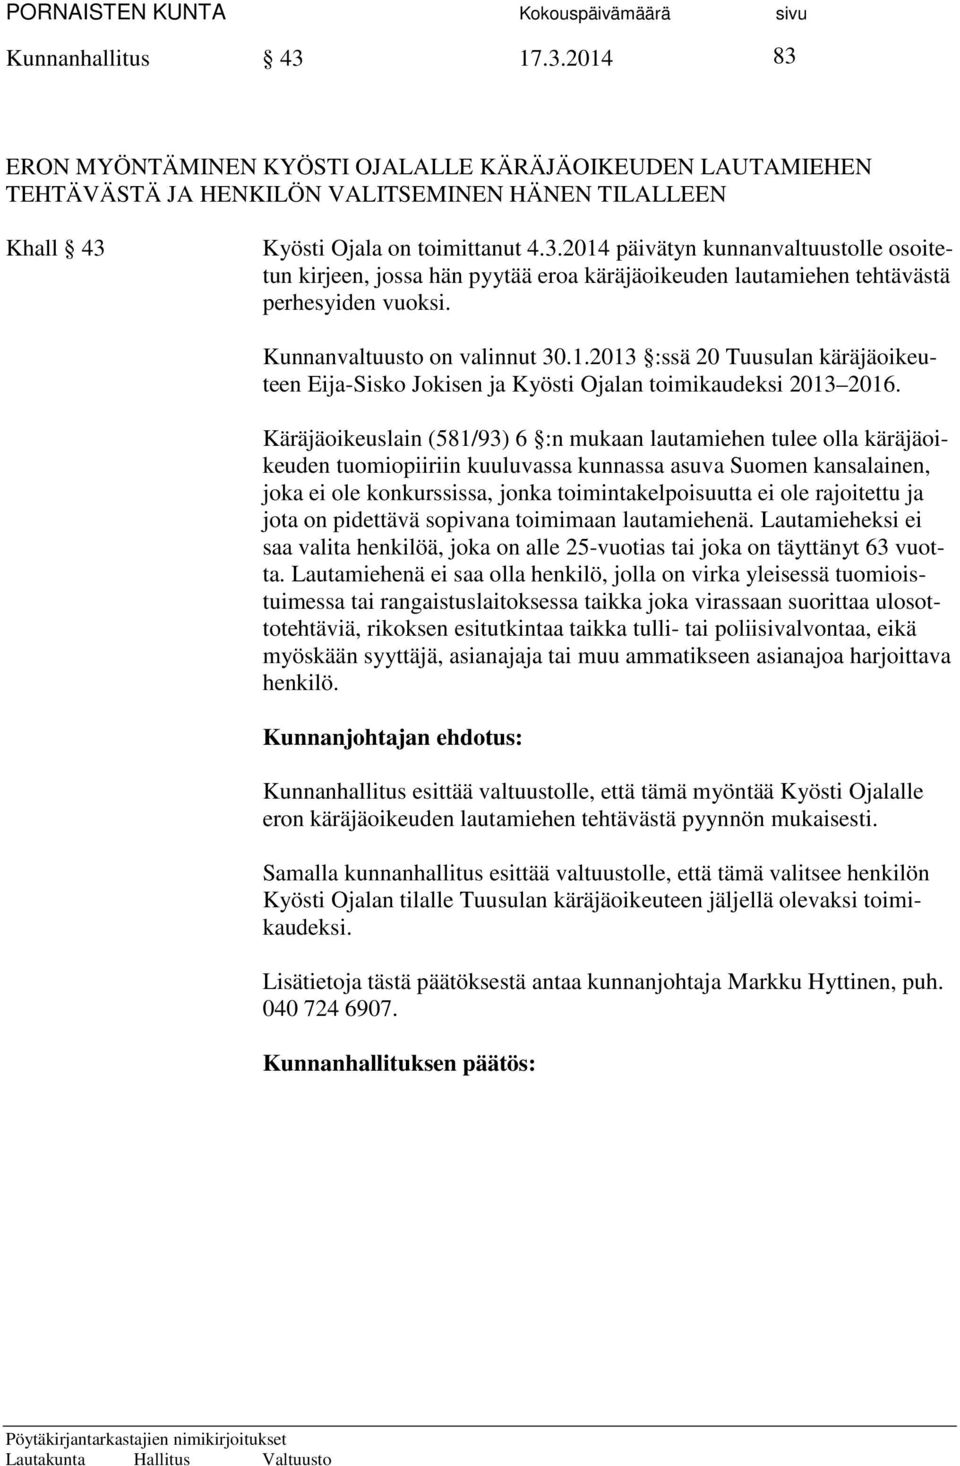 Käräjäoikeuslain (581/93) 6 :n mukaan lautamiehen tulee olla käräjäoikeuden tuomiopiiriin kuuluvassa kunnassa asuva Suomen kansalainen, joka ei ole konkurssissa, jonka toimintakelpoisuutta ei ole